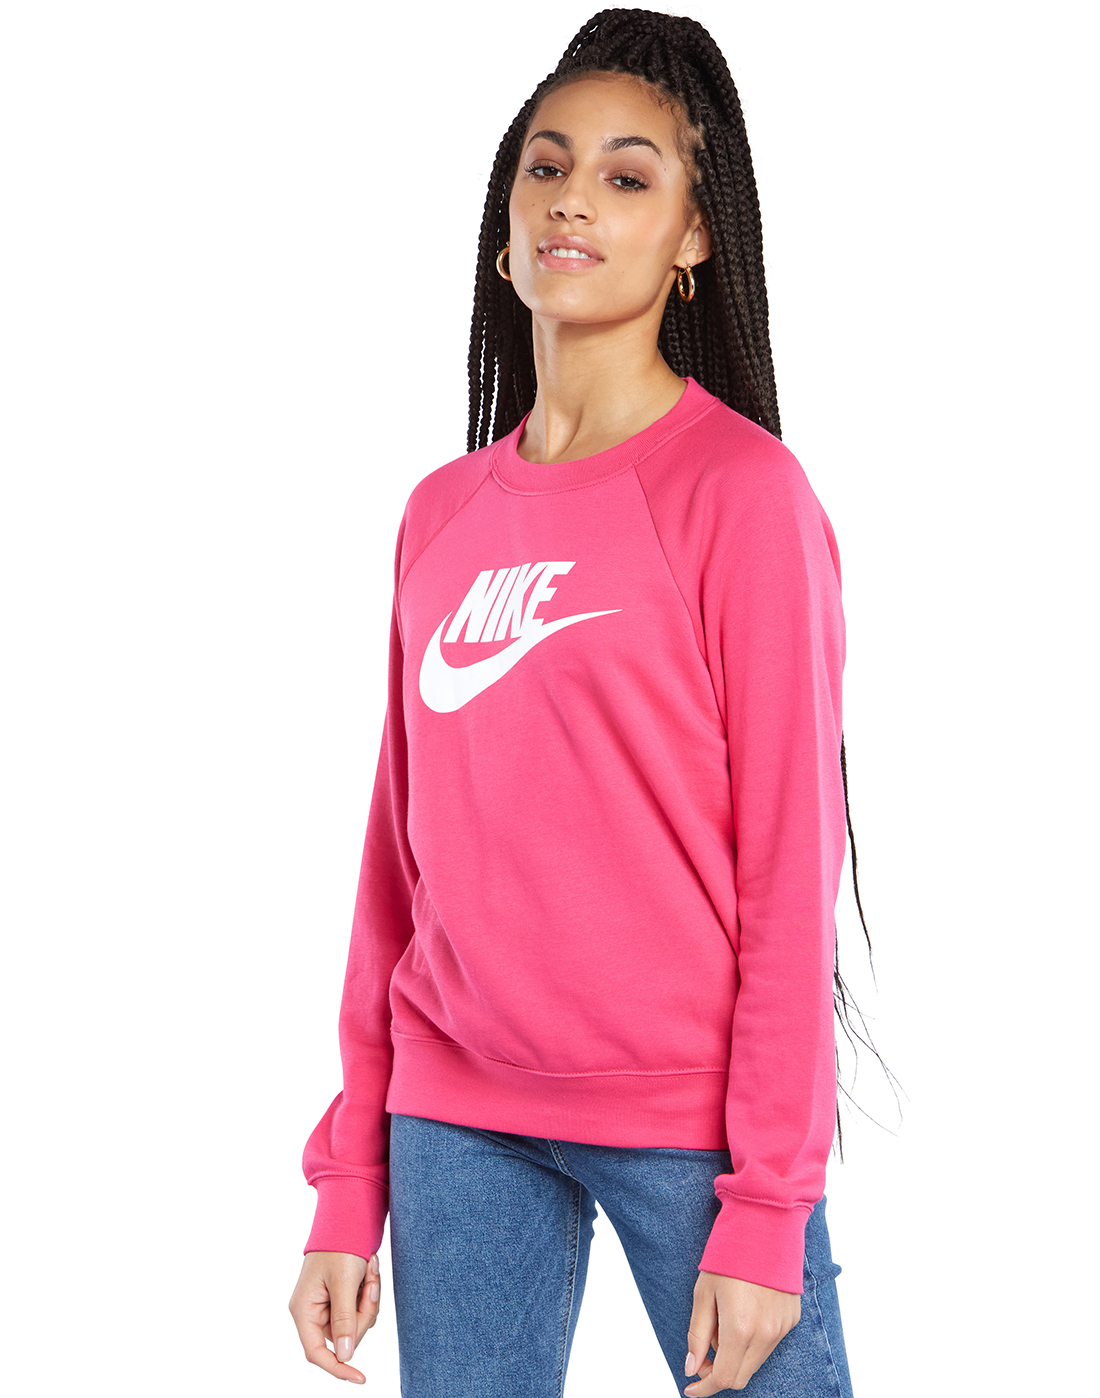 Nike Womens Fleece Crewneck Sweatshirt - Pink | Life Style Sports UK